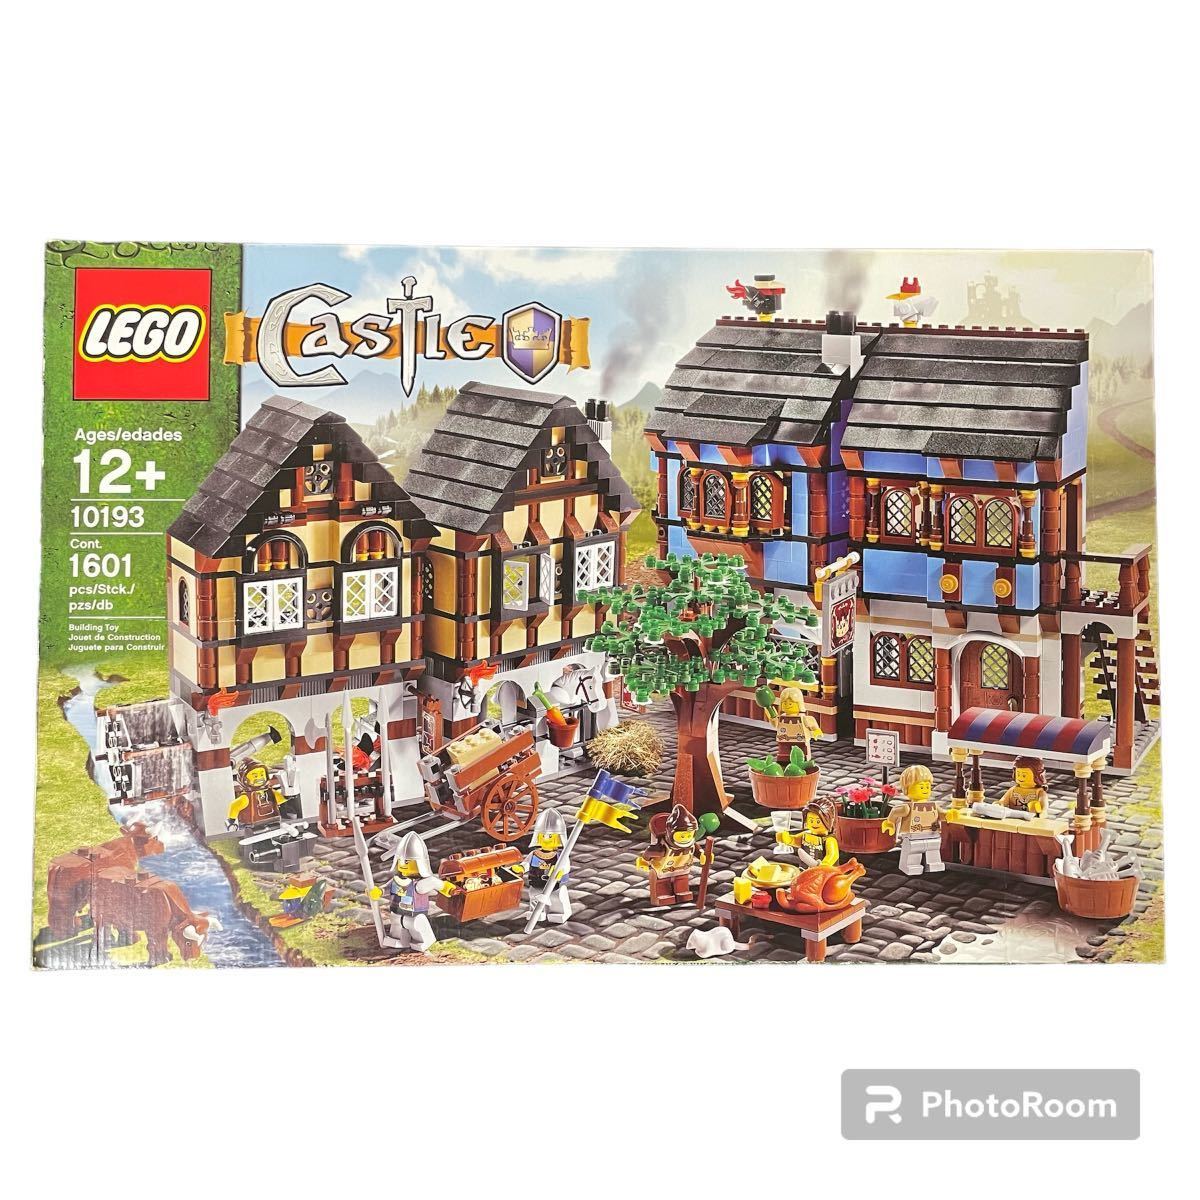 * новый товар * нераспечатанный * Lego LEGO средний .. рынок village Lego дворец 10193 4561268 ценный редкий premium очень редкий трудно найти 